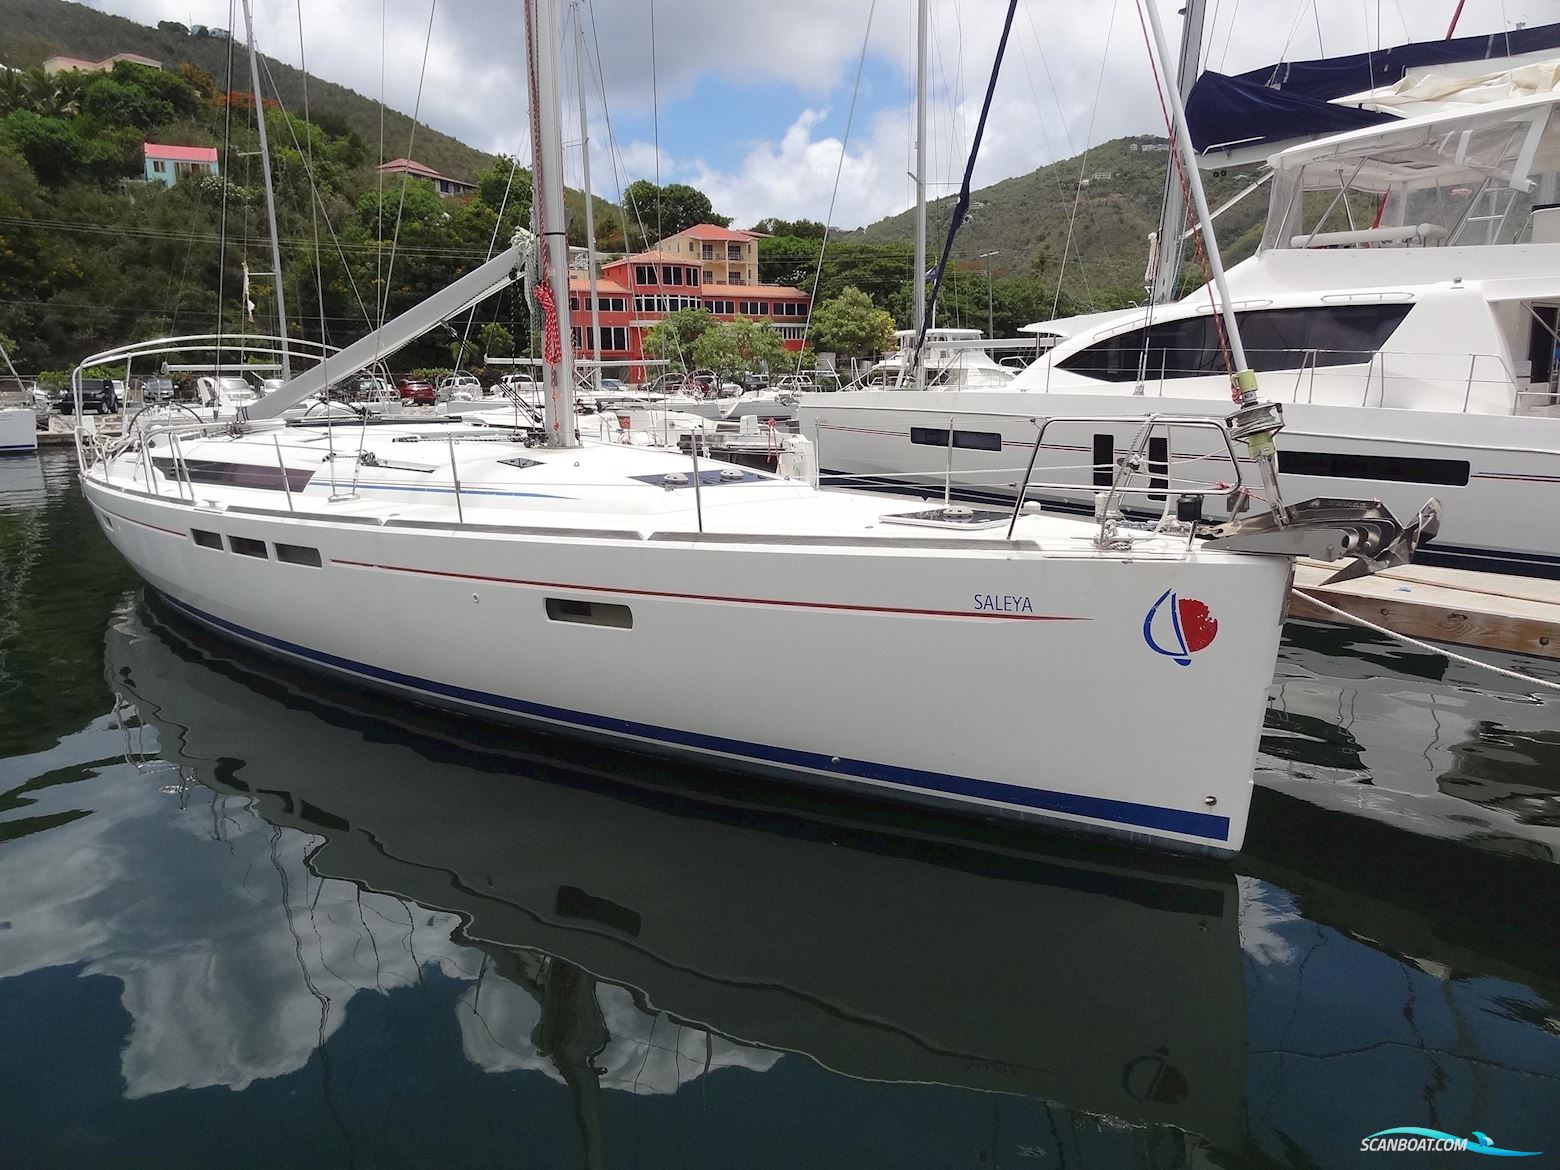 Jeanneau Sun Odyssey 509 Segelbåt 2015, med Yanmar motor, Ingen landinfo